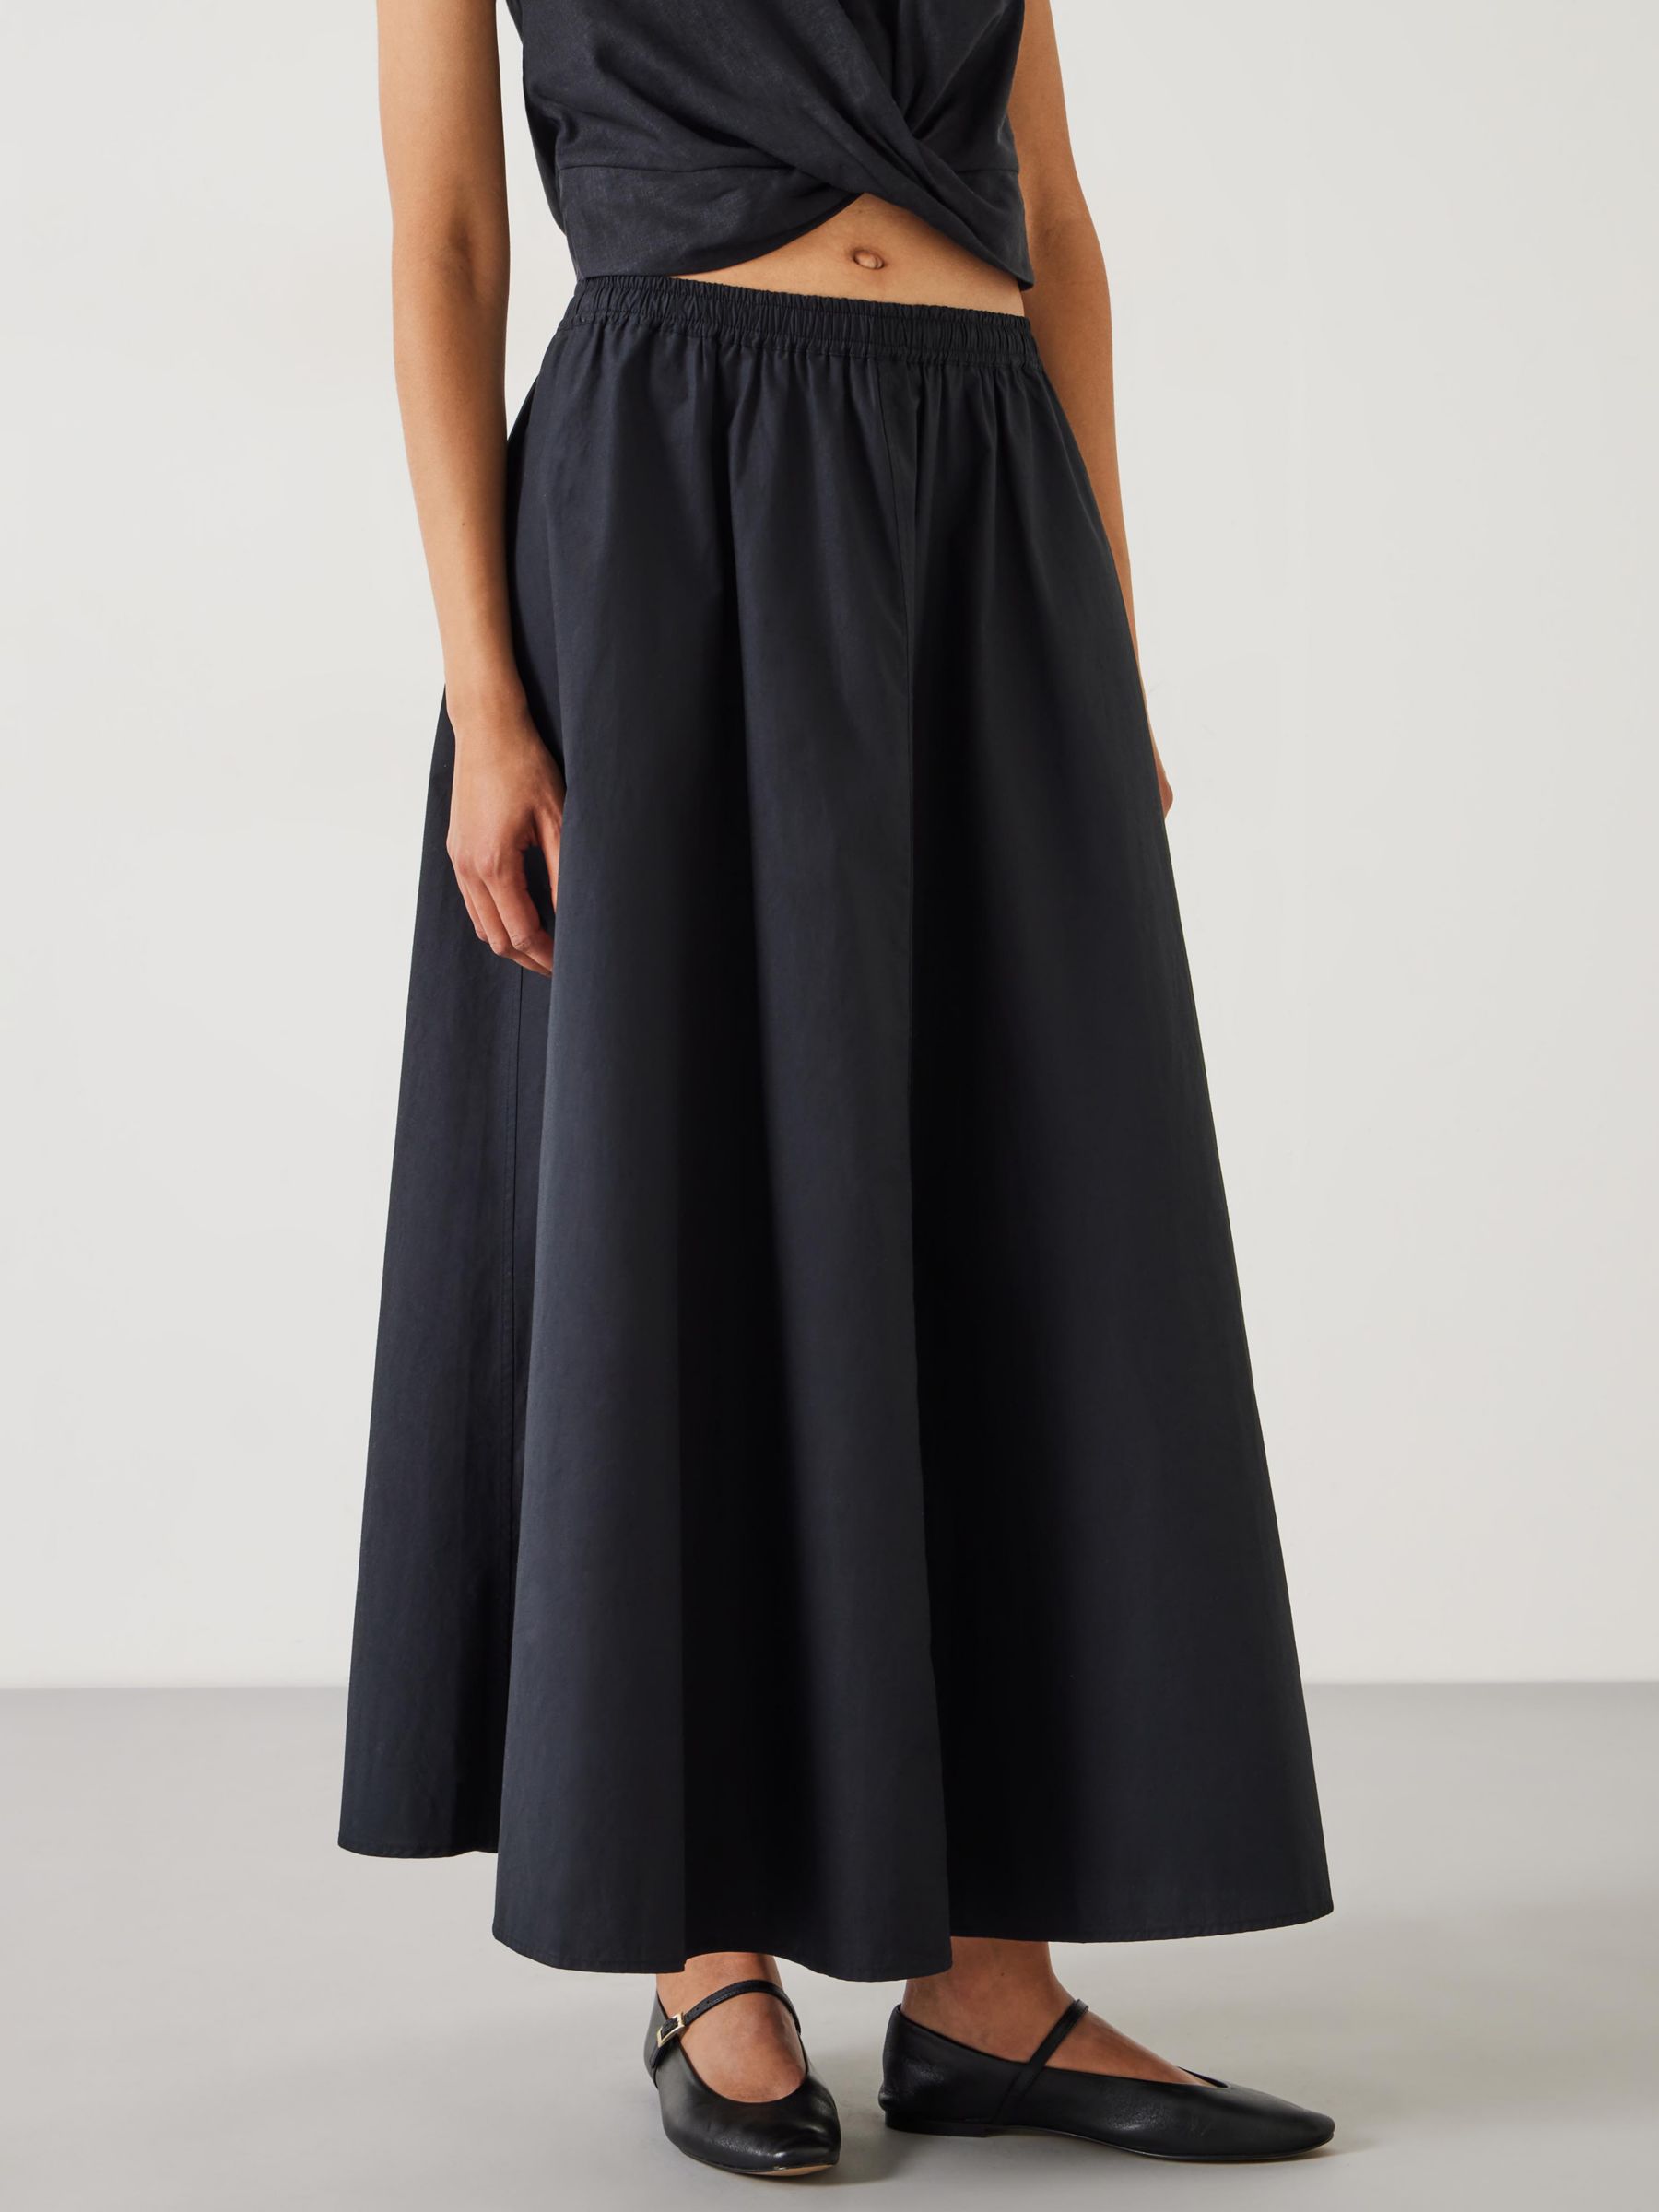 HUSH Ishani Maxi Poplin Skirt, Black, 10